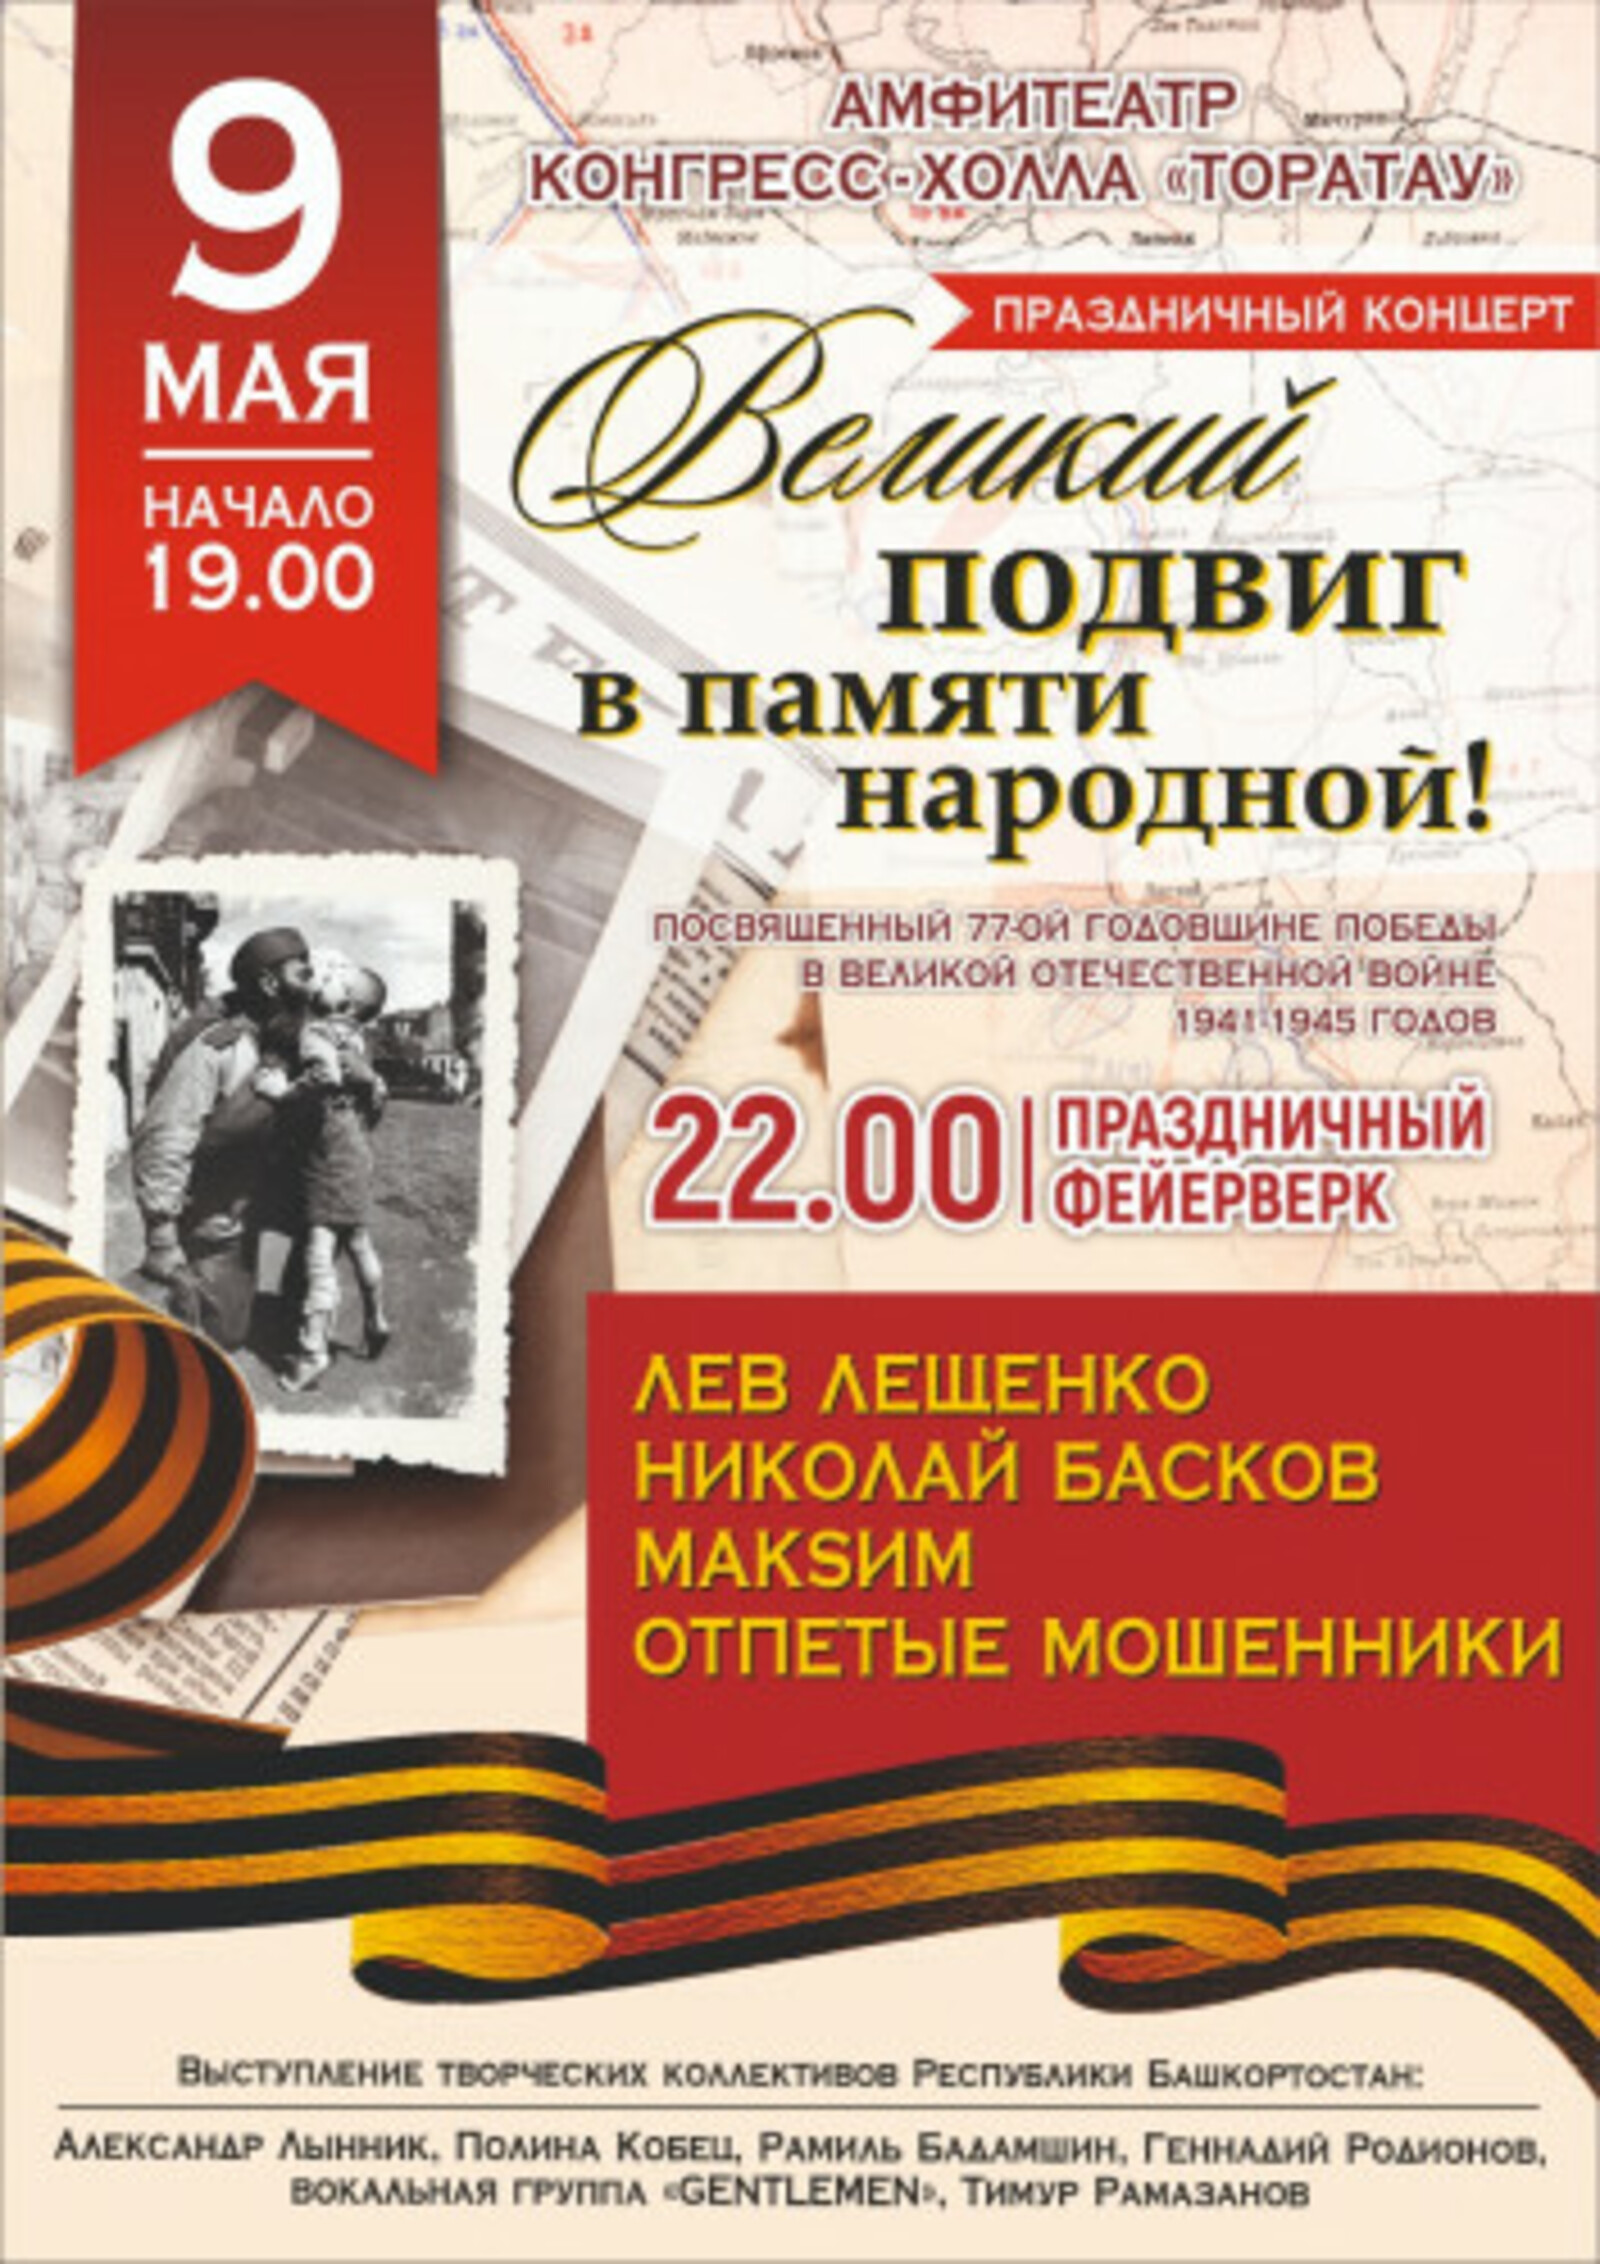 9 мая в Уфе споют Лев Лещенко, Николай Басков, МакSим и группа "Отпетые мошенники"